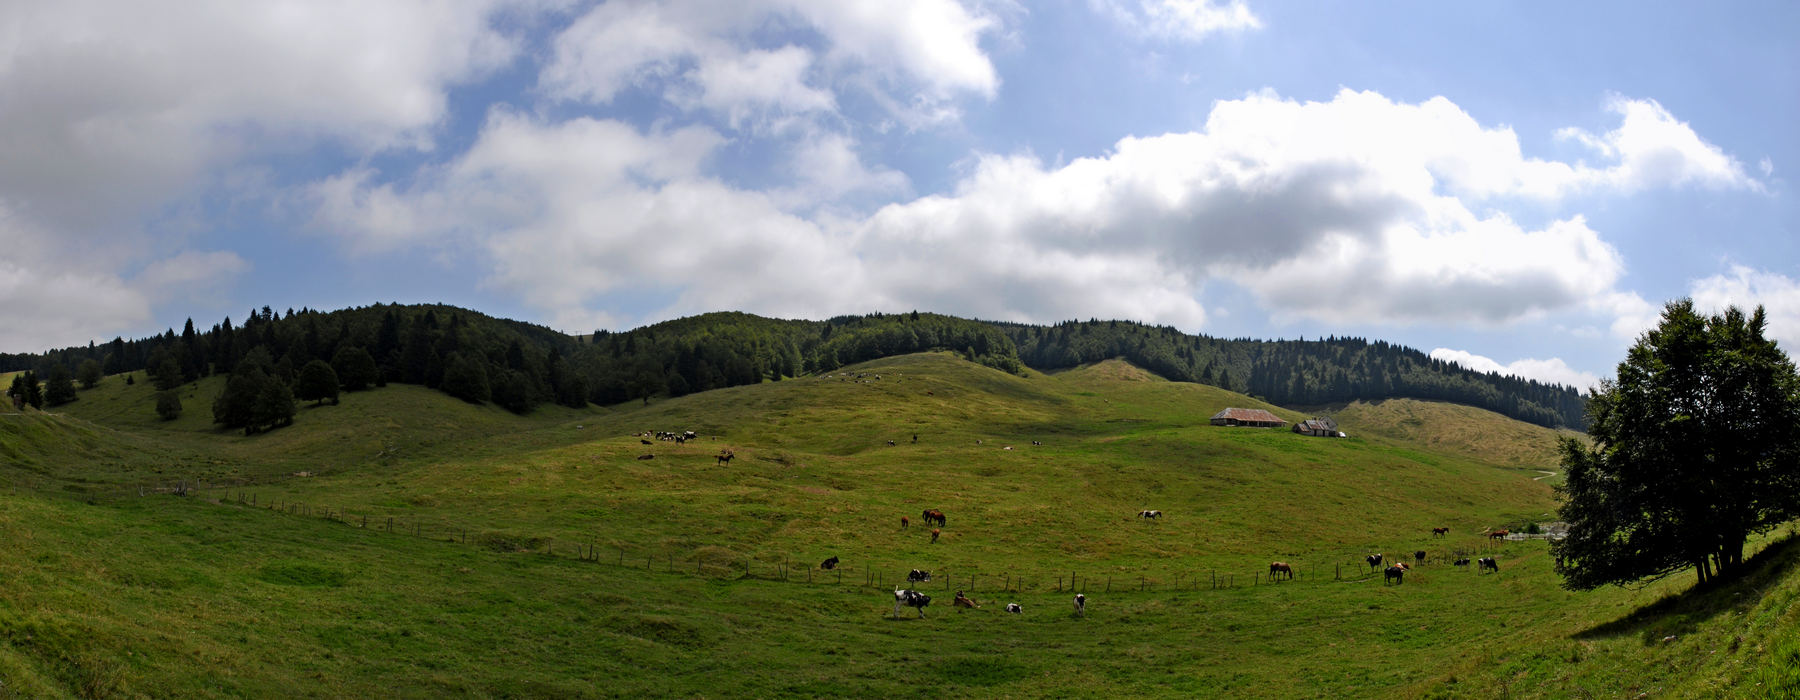 panoramica val Melago malga Melago, Gallio Altopiano Asiago Sette Comuni